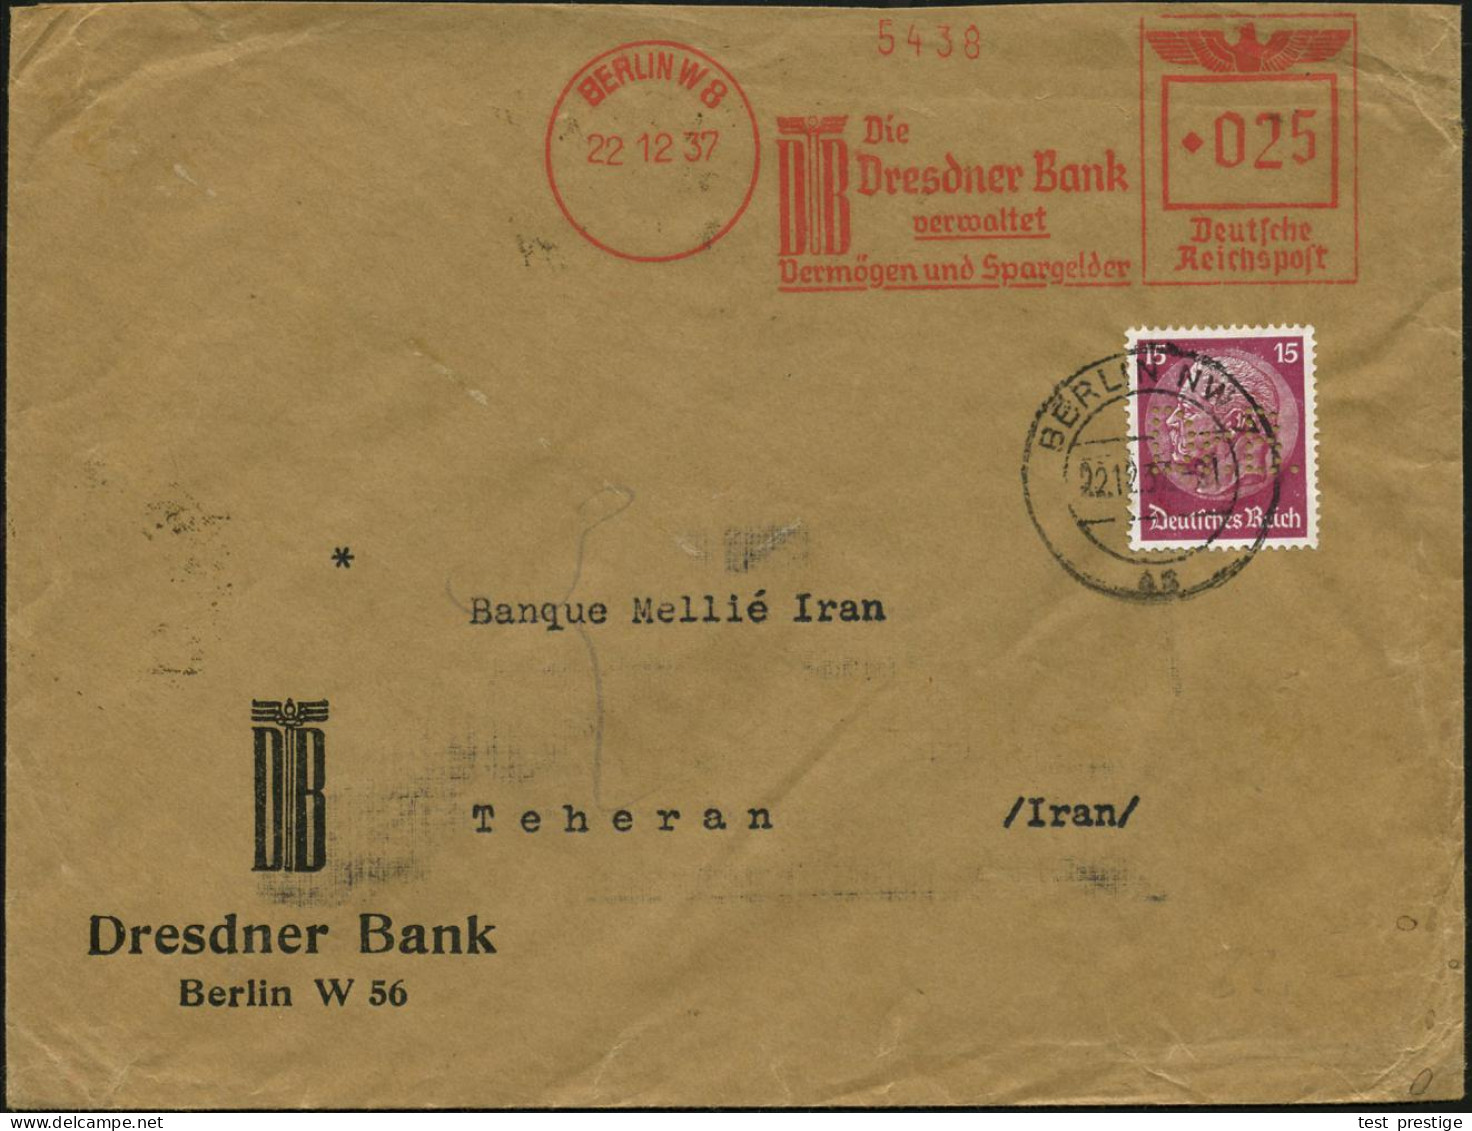 BERLIN W8/ DB/ Die/ Dresdner Bank/ Verwaltet/ Vermögen.. 1937 (22.12.) AFS Francotyp 025 Pf. Francotyp "Reichsadler" + 1 - Autres